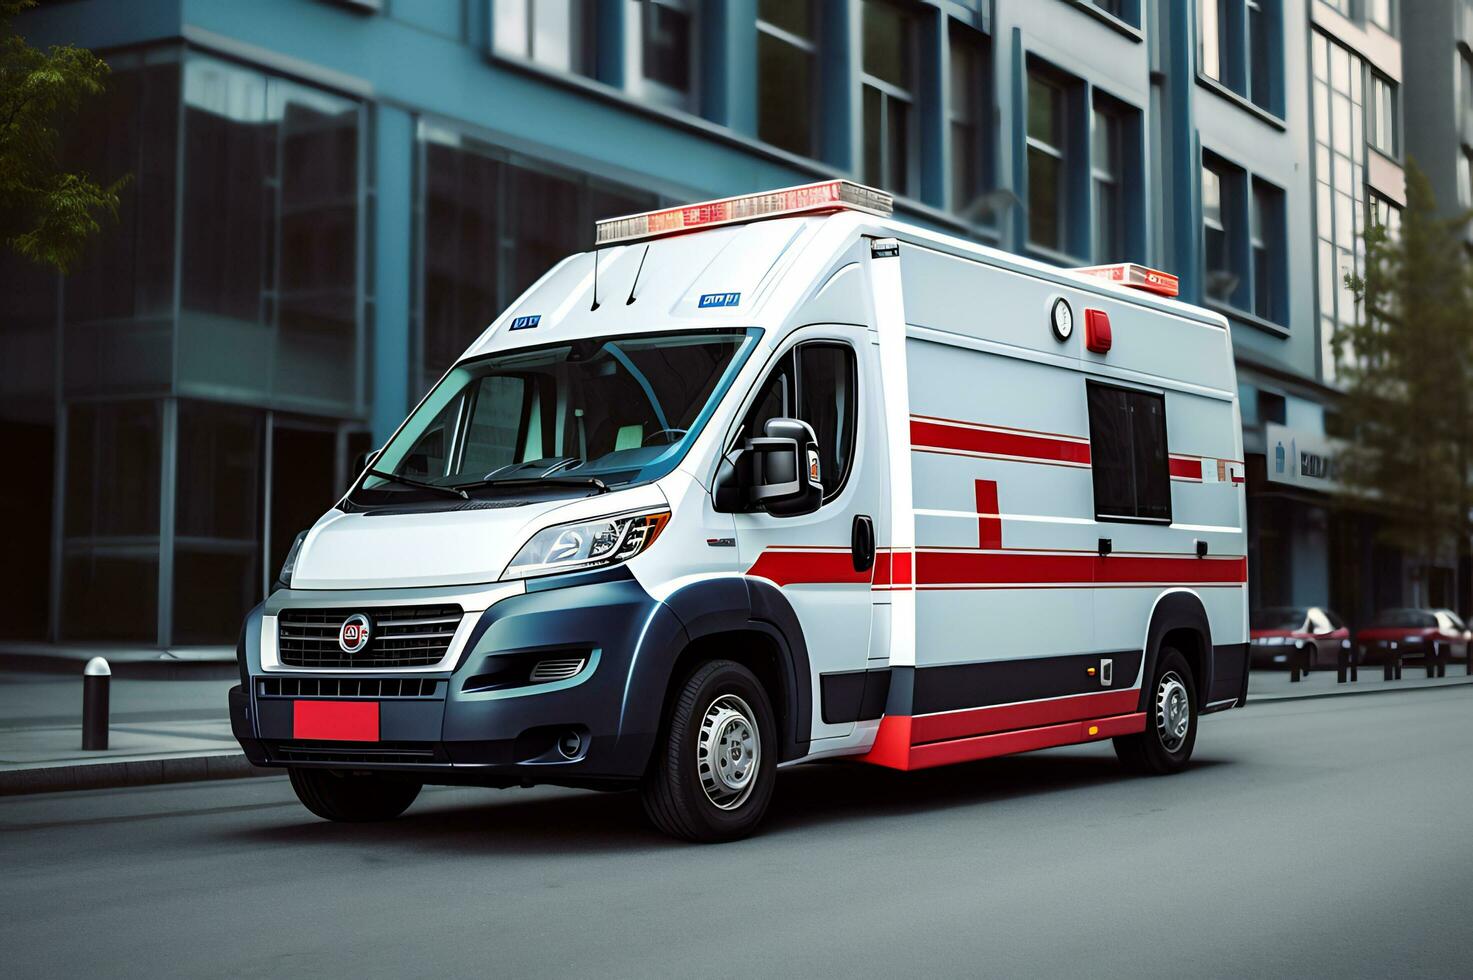 médico emergencia ambulancia coche en el calle foto